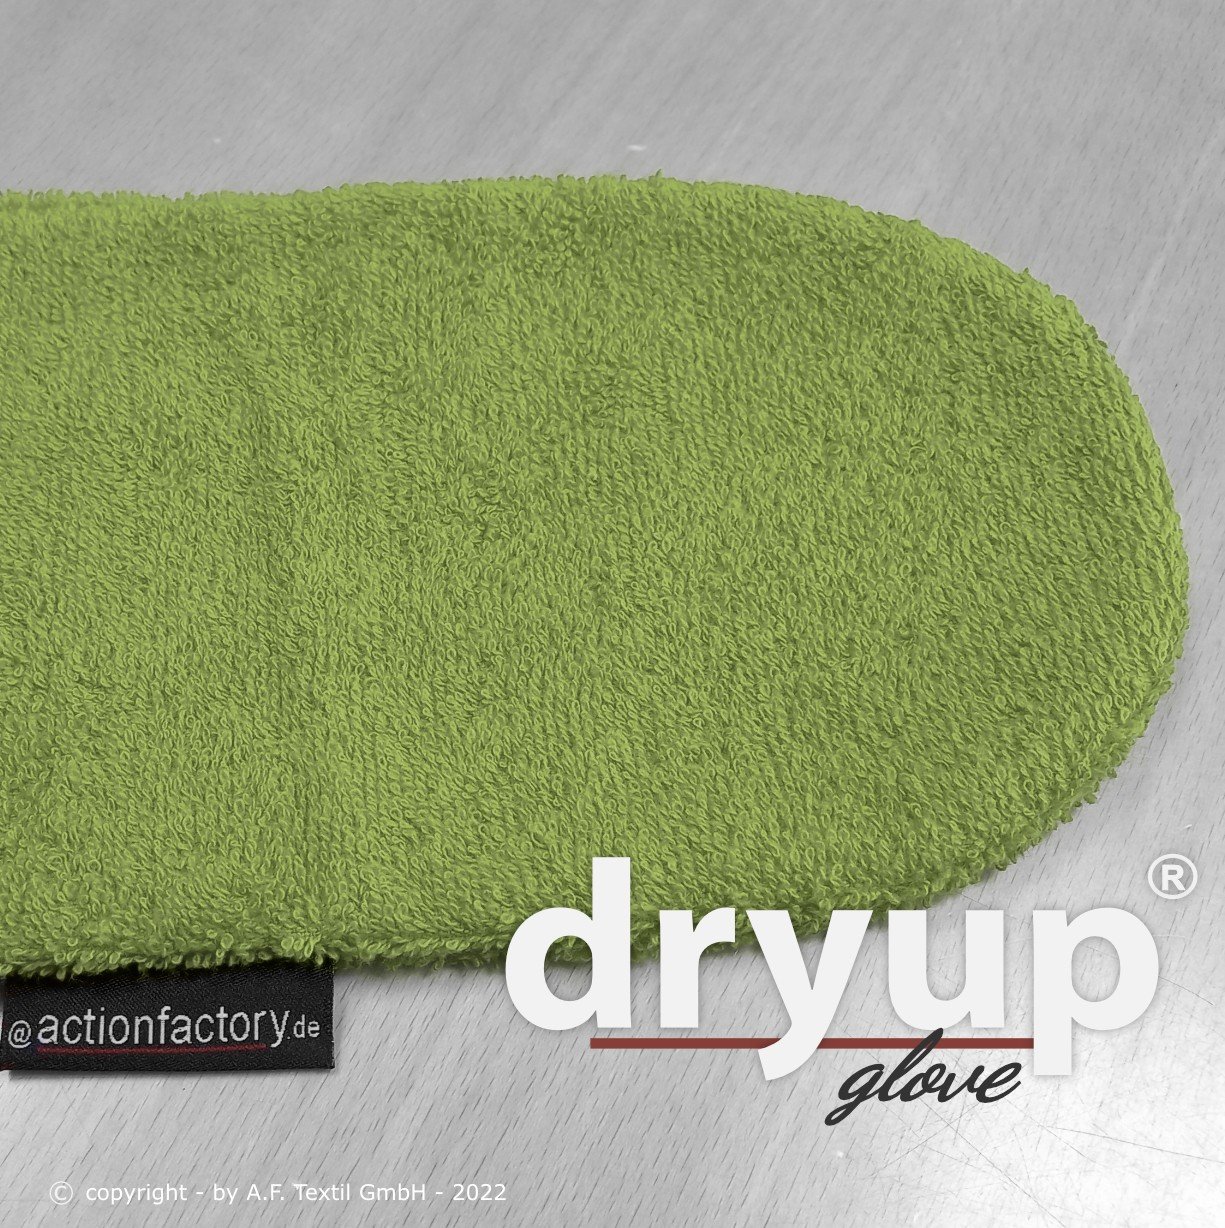 Dryup Glove - Kiwi